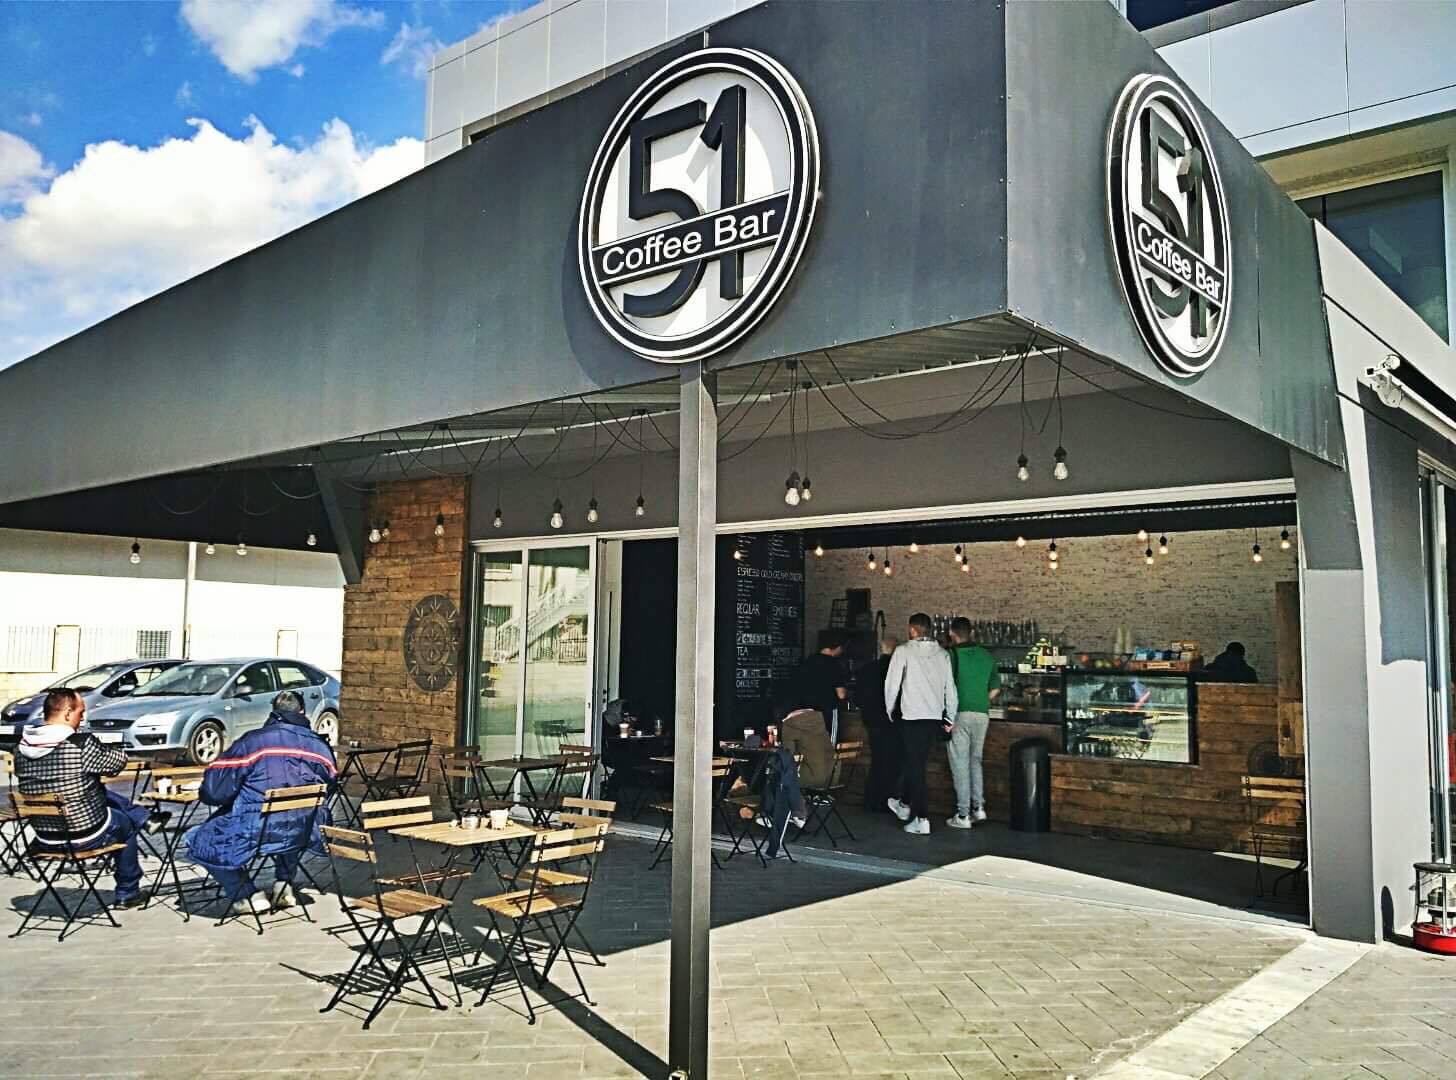 Το  51 Coffee Bar στην Αραδίππου θα είναι ανοιχτό μέχρι και την Μεγάλη Παρασκευή